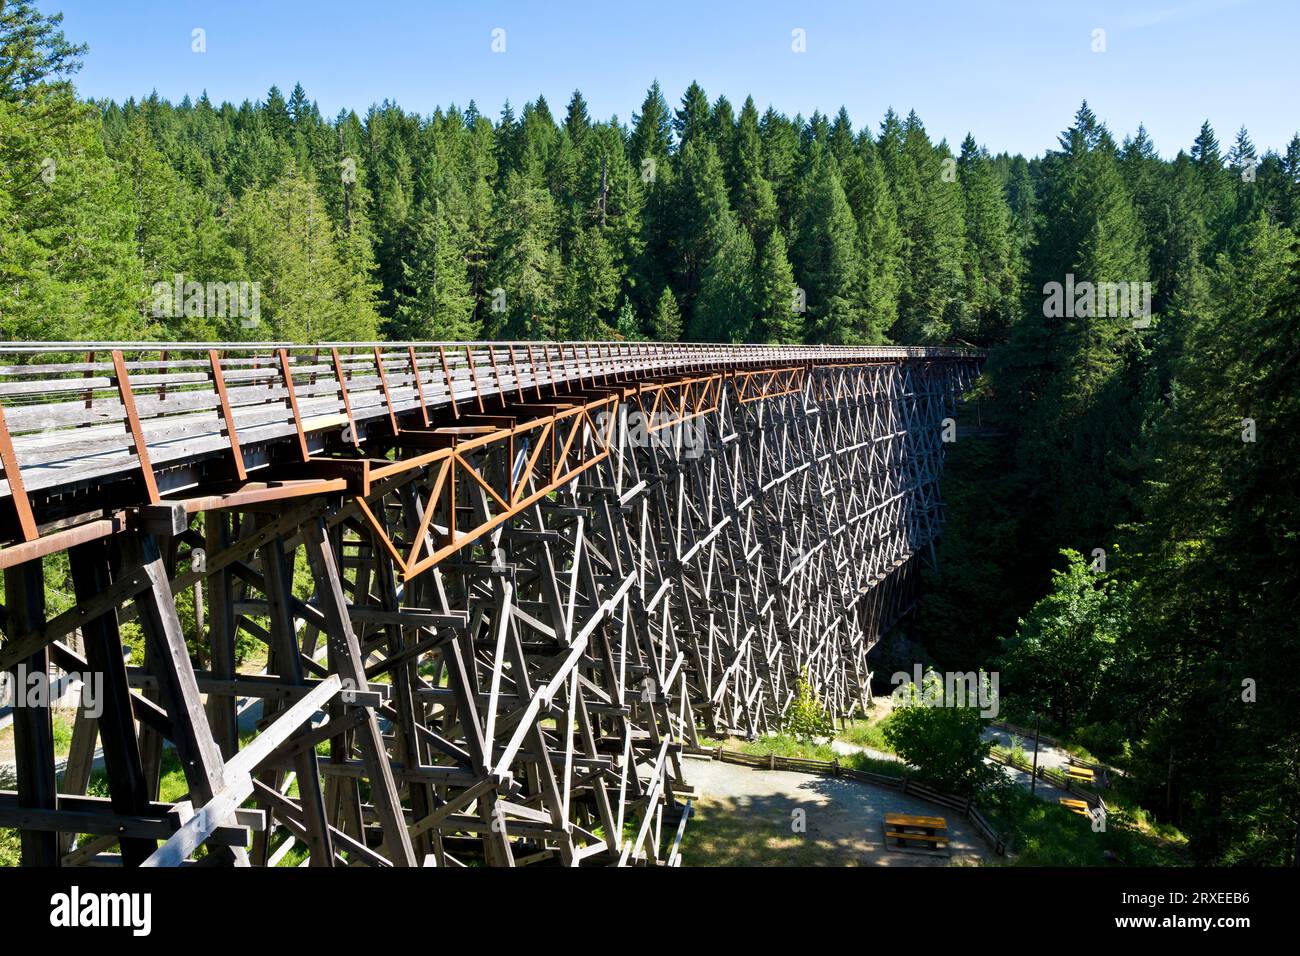 Kinsol Trestle, un ancien pont ferroviaire sur l'île de Vancouver, qui est maintenant un sentier pédestre et cyclable. Endroit pittoresque dans la vallée de Cowichan, en Colombie-Britannique. Banque D'Images